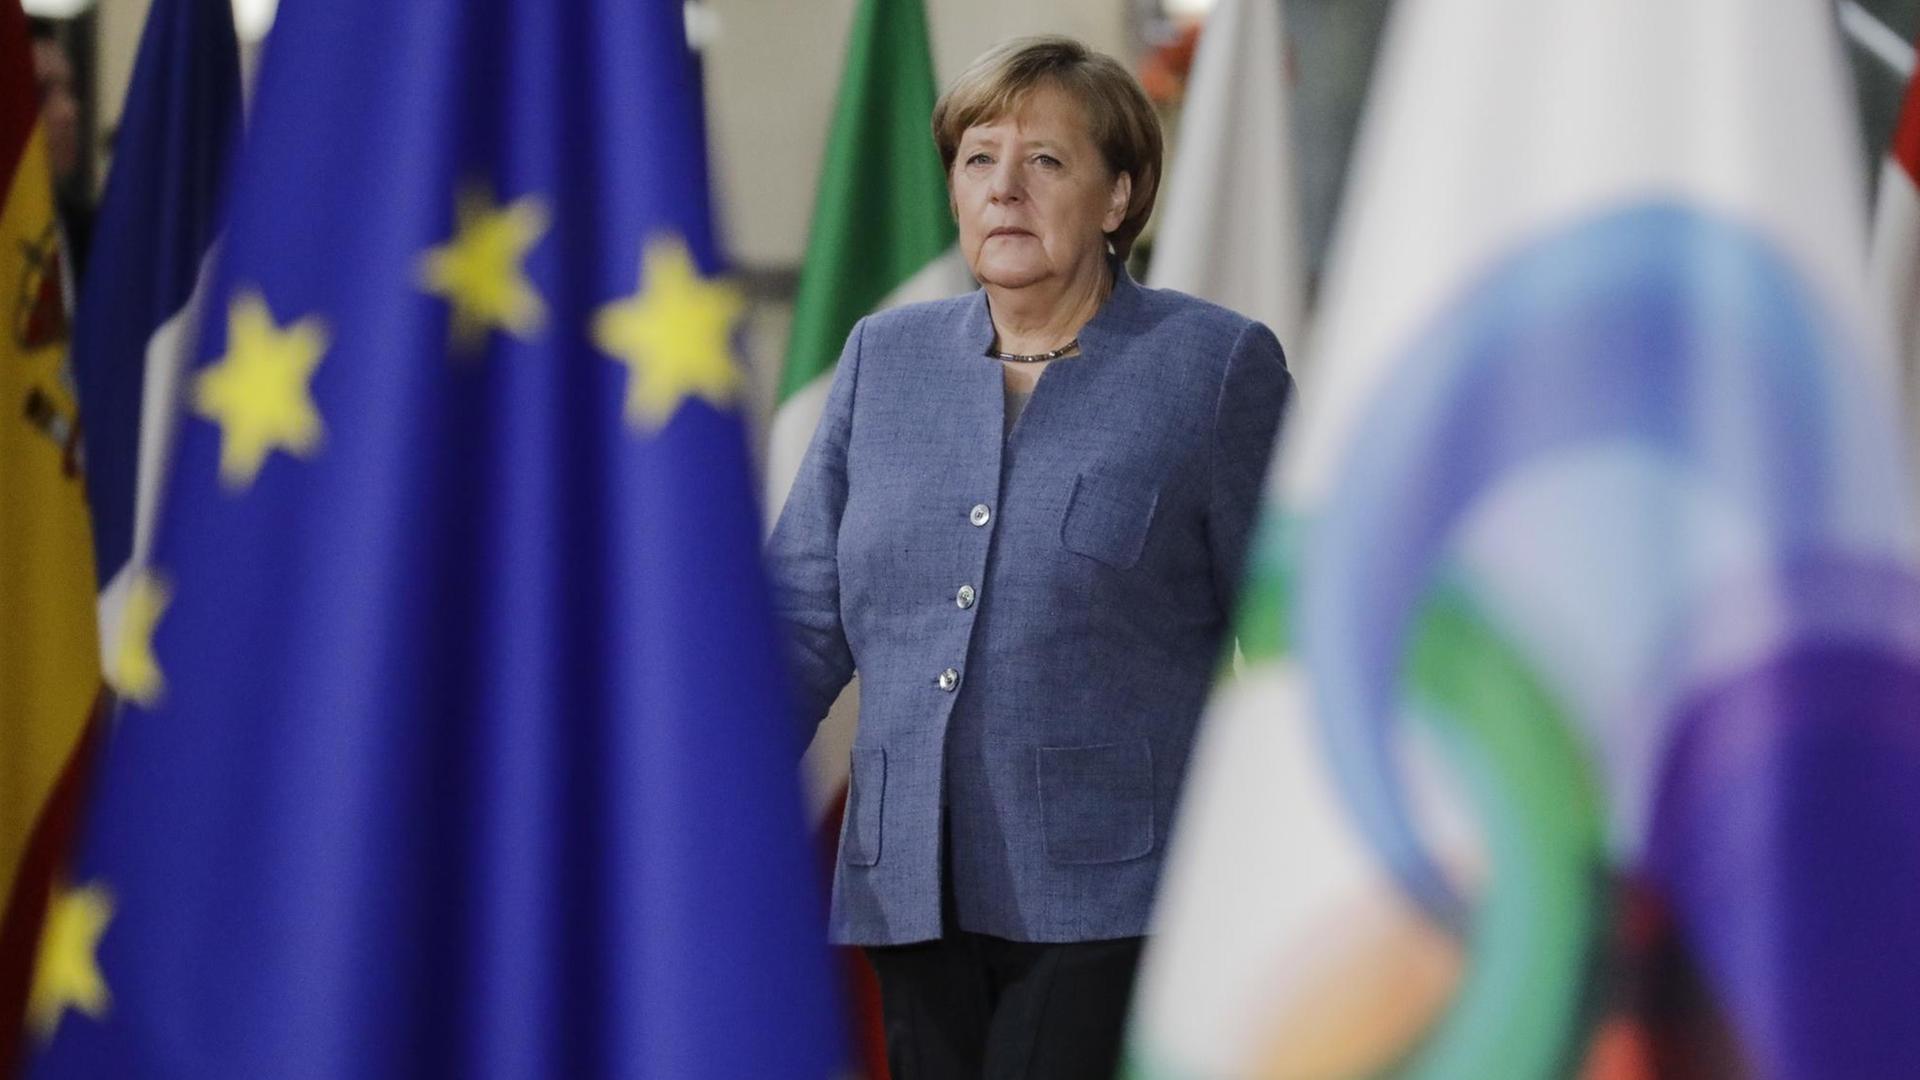 Angela Merkel beim Gipfeltreffen Östlichen Partnerschaft in Brüssel zwischen zwei Fahnen.